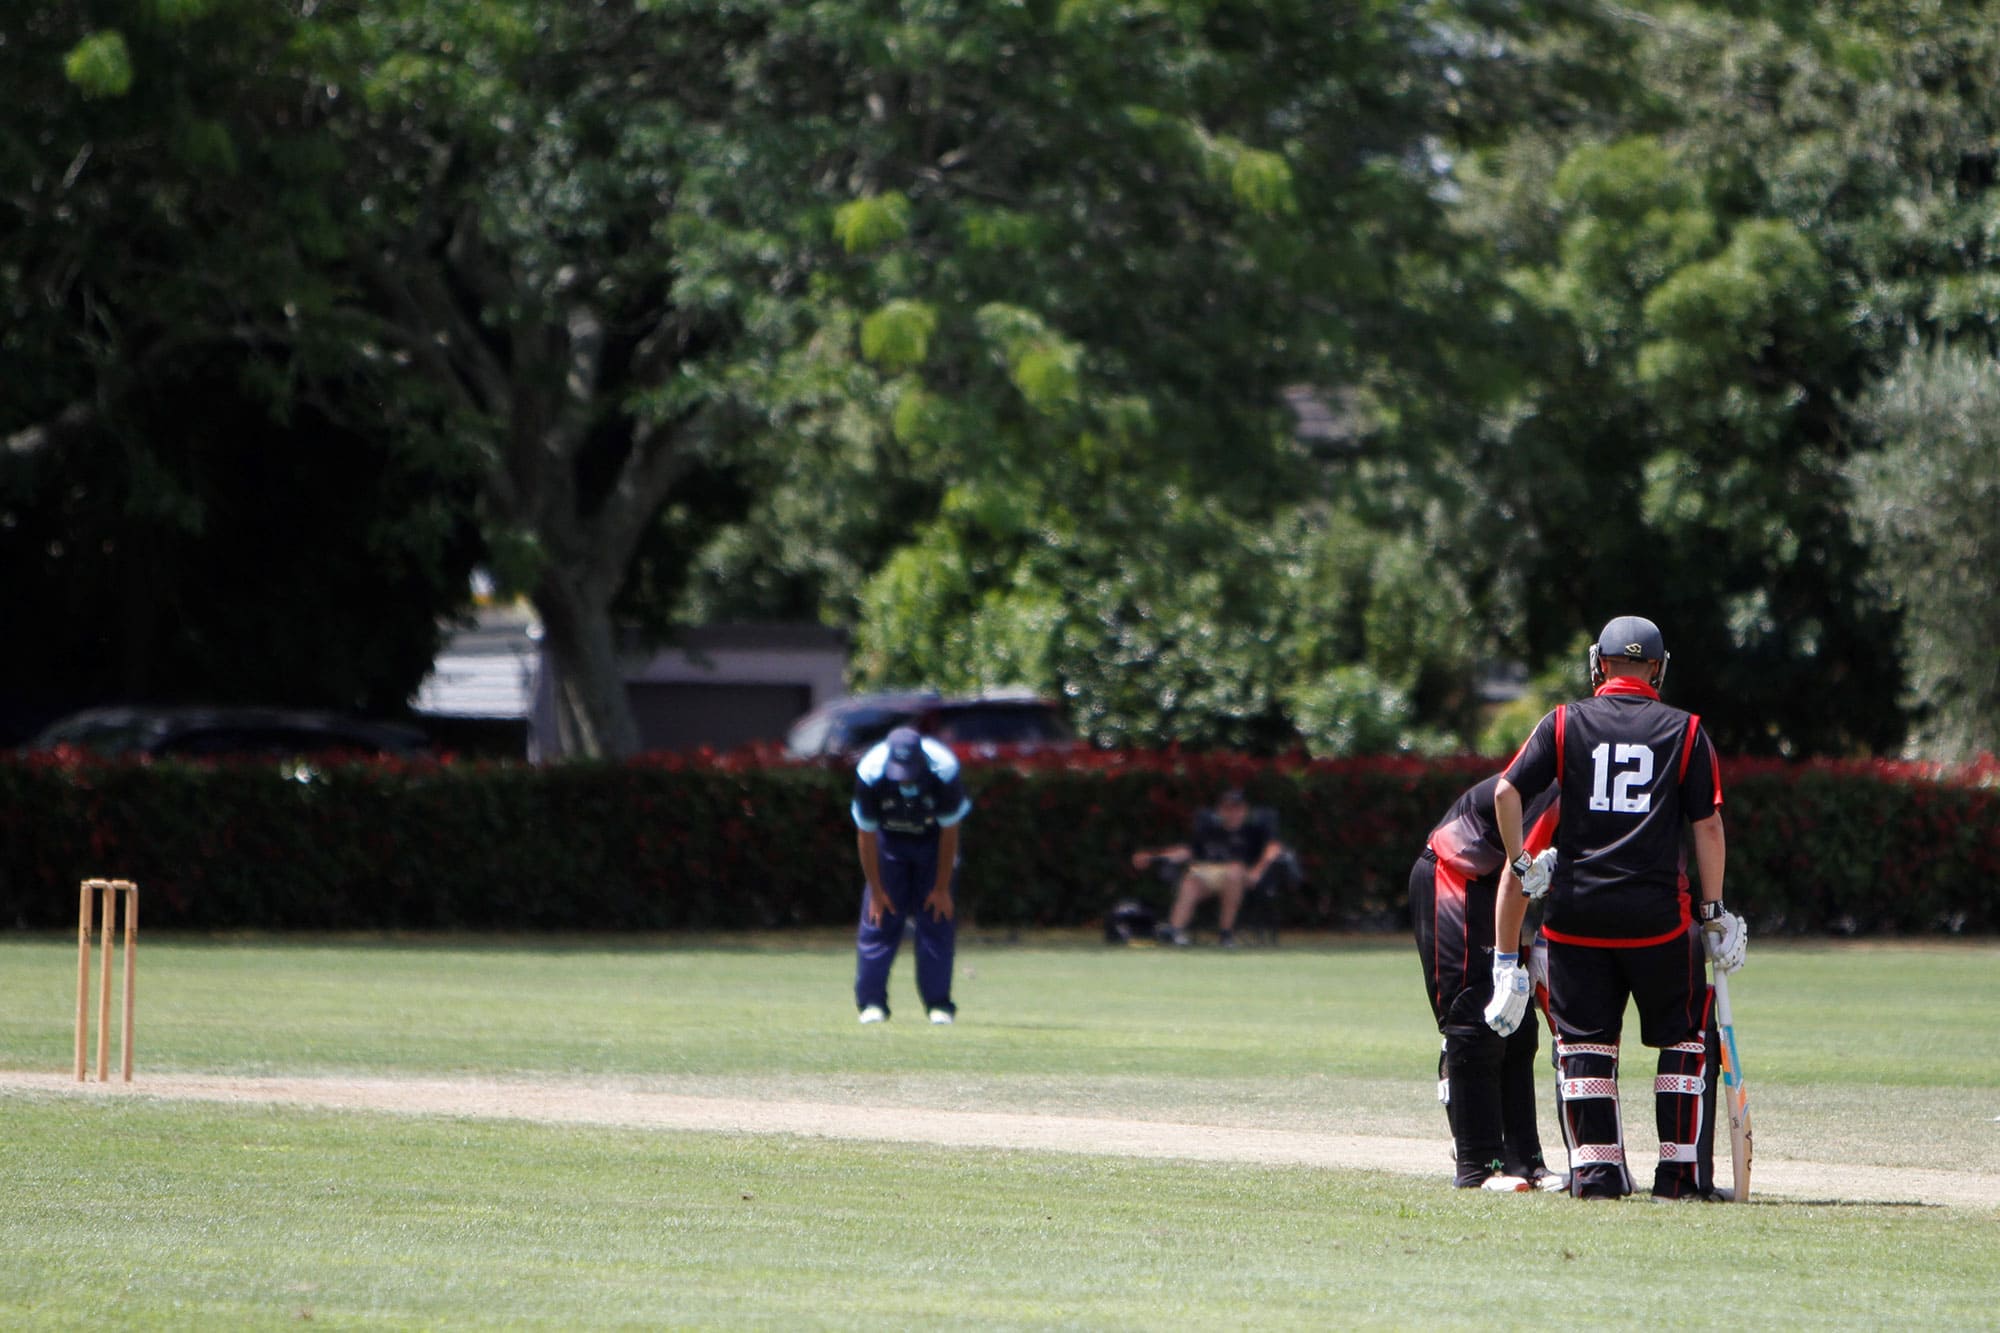 hamilton old boys cricket club Waikato New Zealand Team Gallery Photos 12